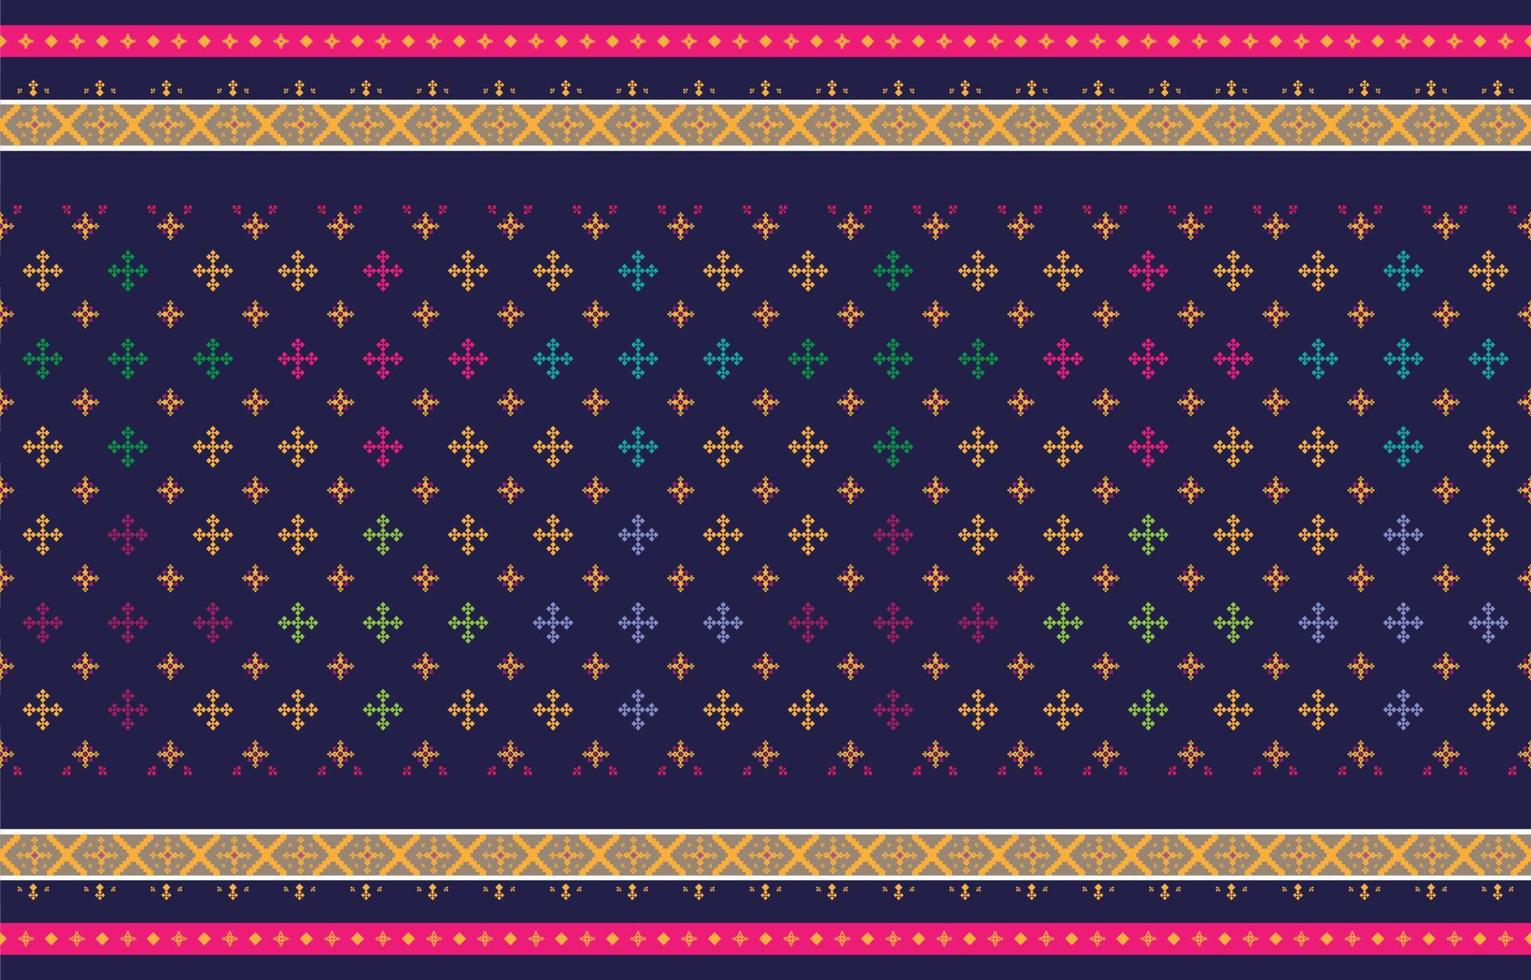 abstracte geometrische en tribale patronen, gebruiksontwerp lokale stoffenpatronen en ontwerp geïnspireerd door inheemse stammen. geometrische vectorillustratie vector